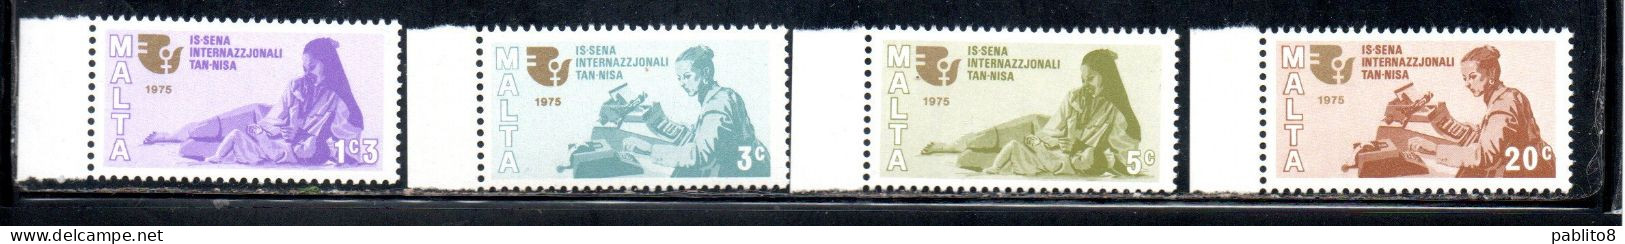 MALTA 1975 IWY INTERNATIONAL WOMEN'S YEAR ANNO INTERNAZIONALE DELLA DONNA COMPLETE SET SERIE COMPLETA MNH - Malta